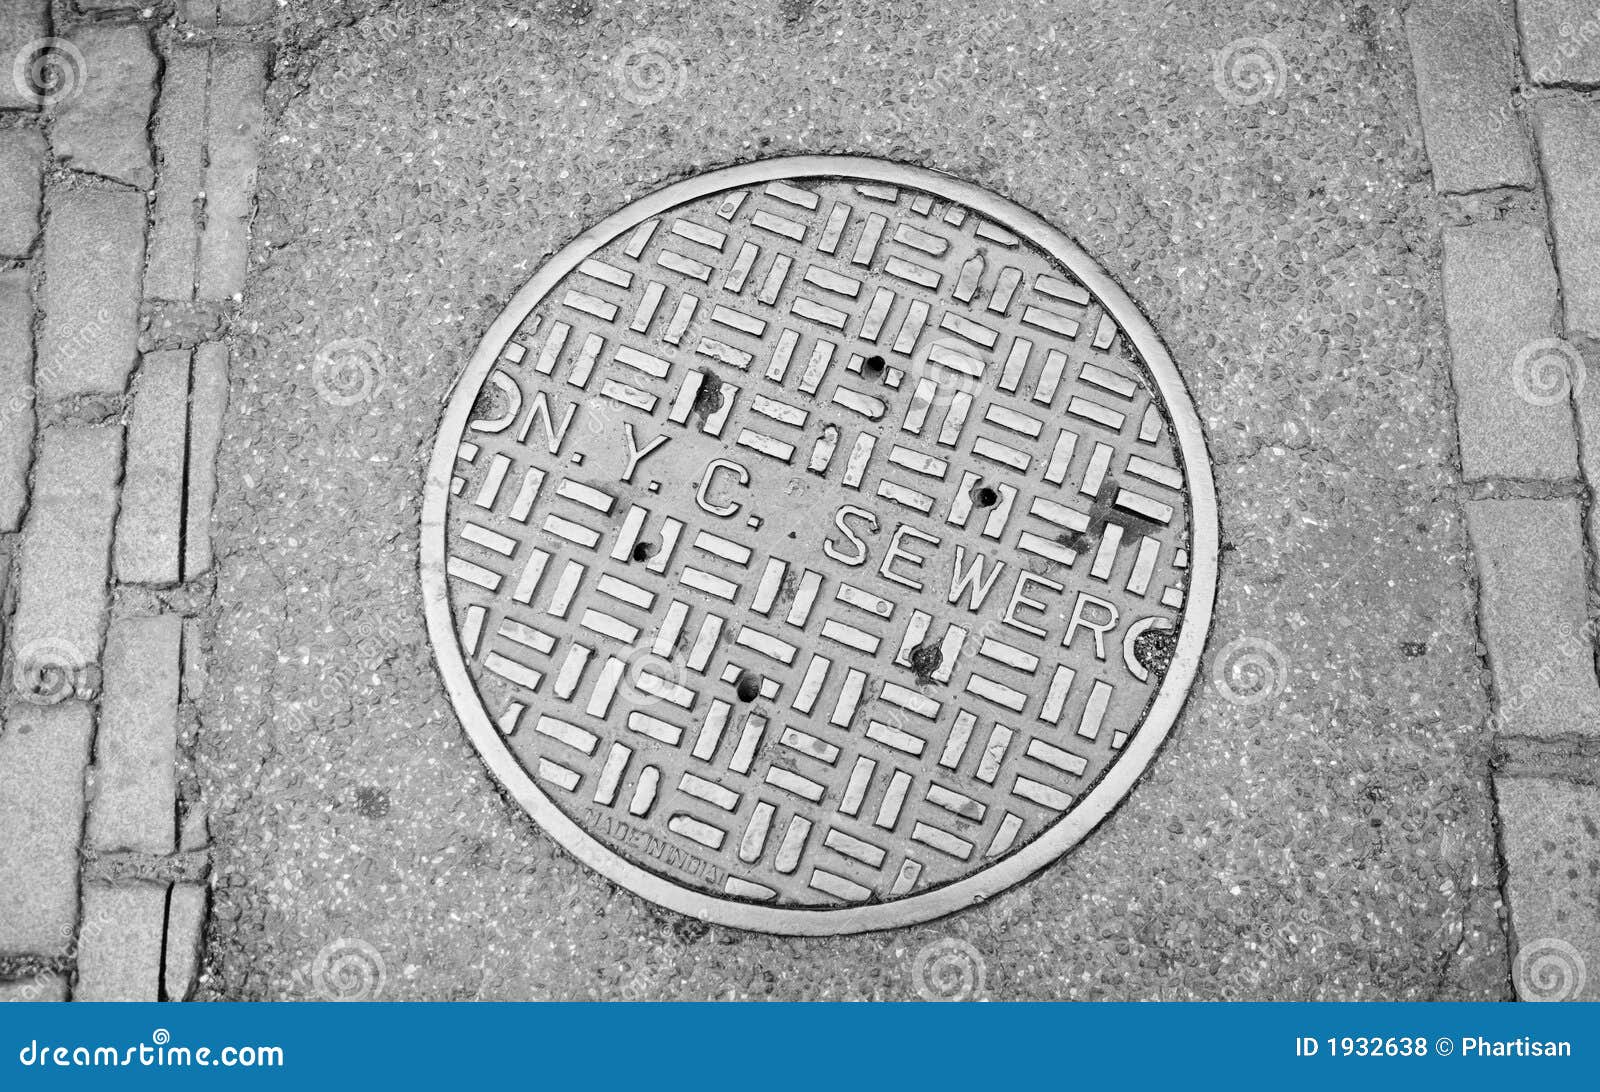 new york city manhole cover